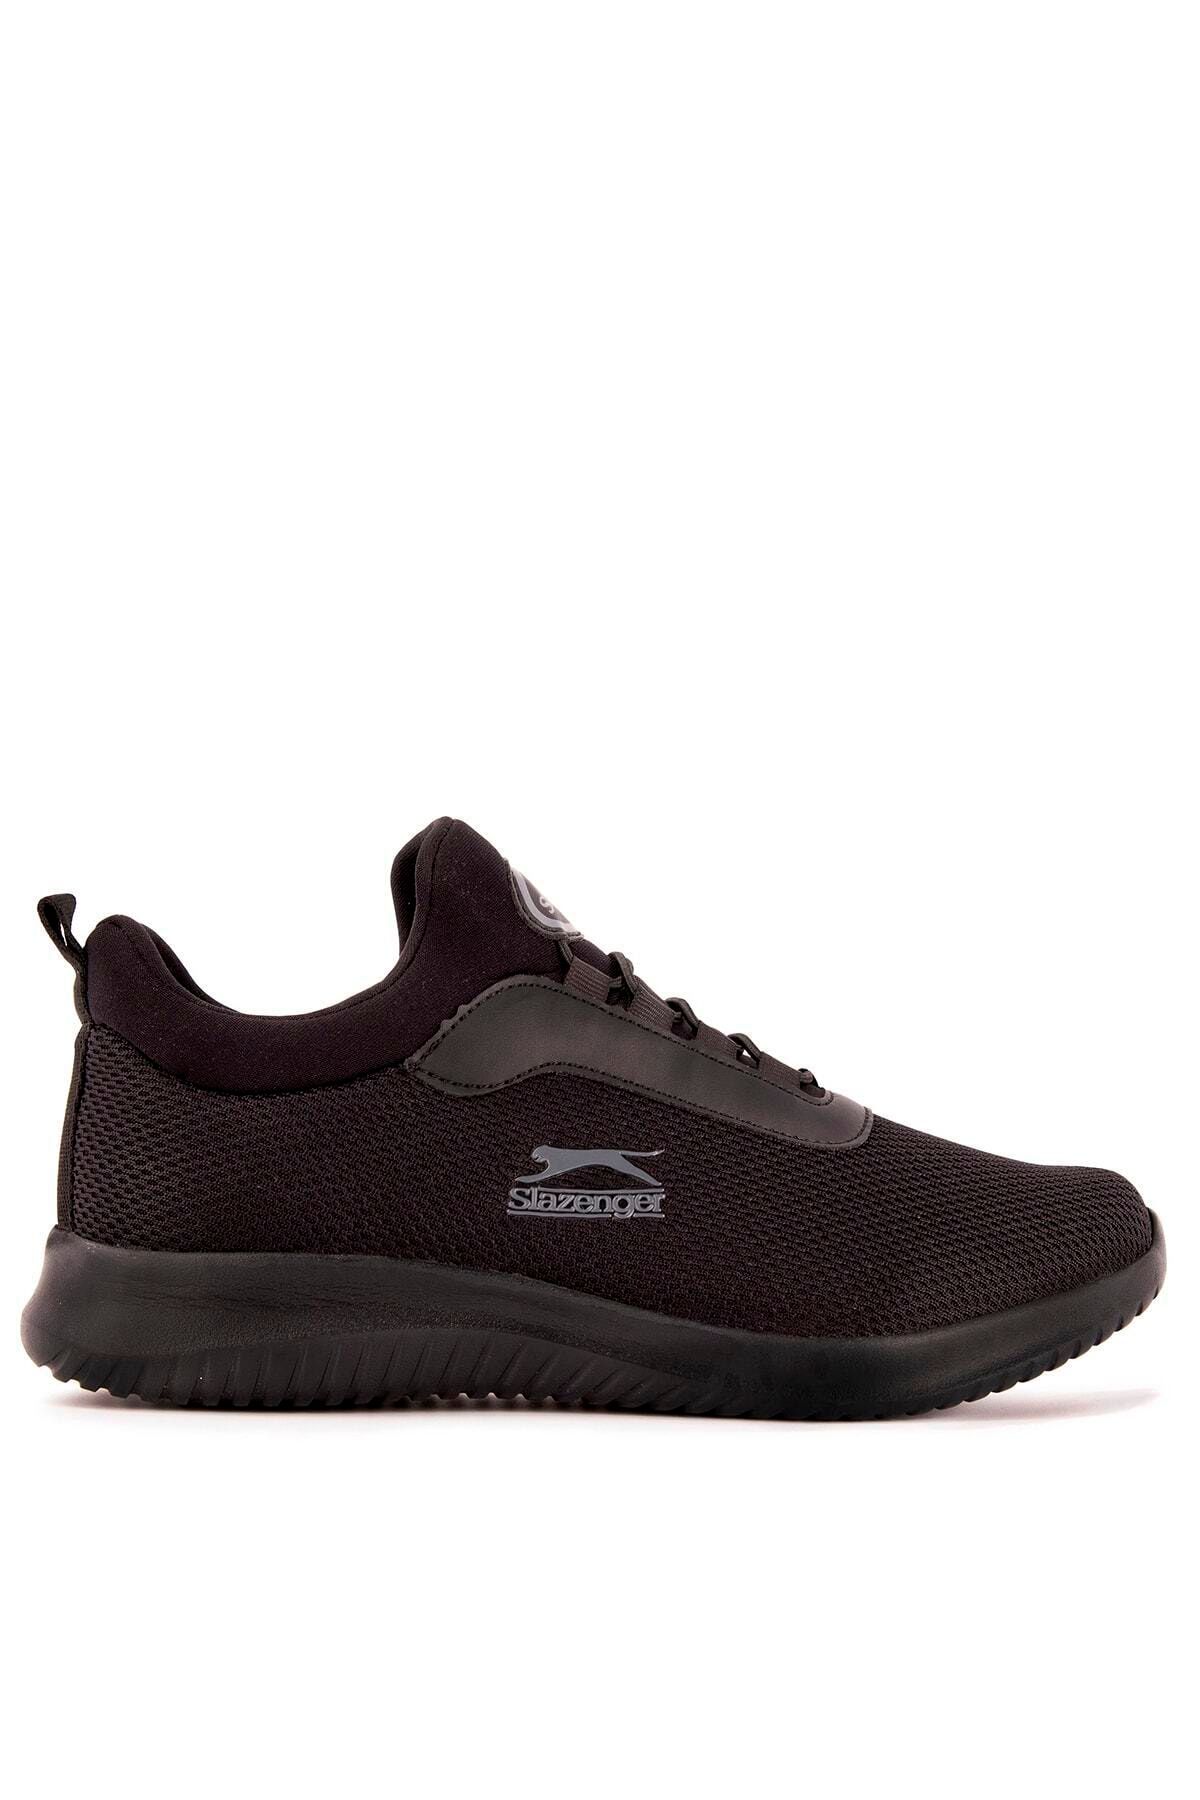 Slazenger Zamora Sneaker Kadın Ayakkabı Siyah / Siyah Sa11rk014